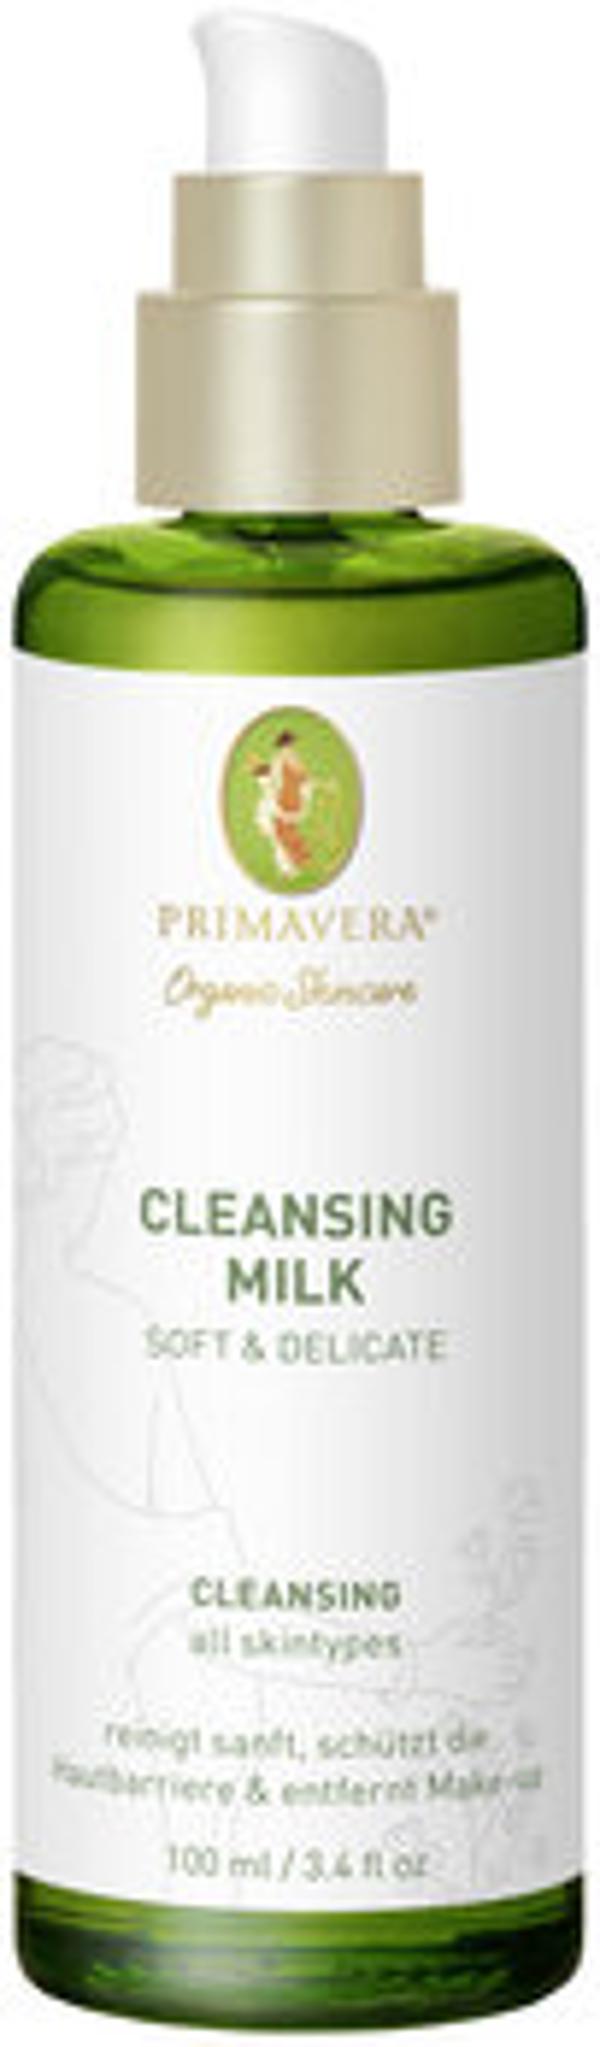 Produktfoto zu Cleansing Milk Soft & Delicate, 100 ml